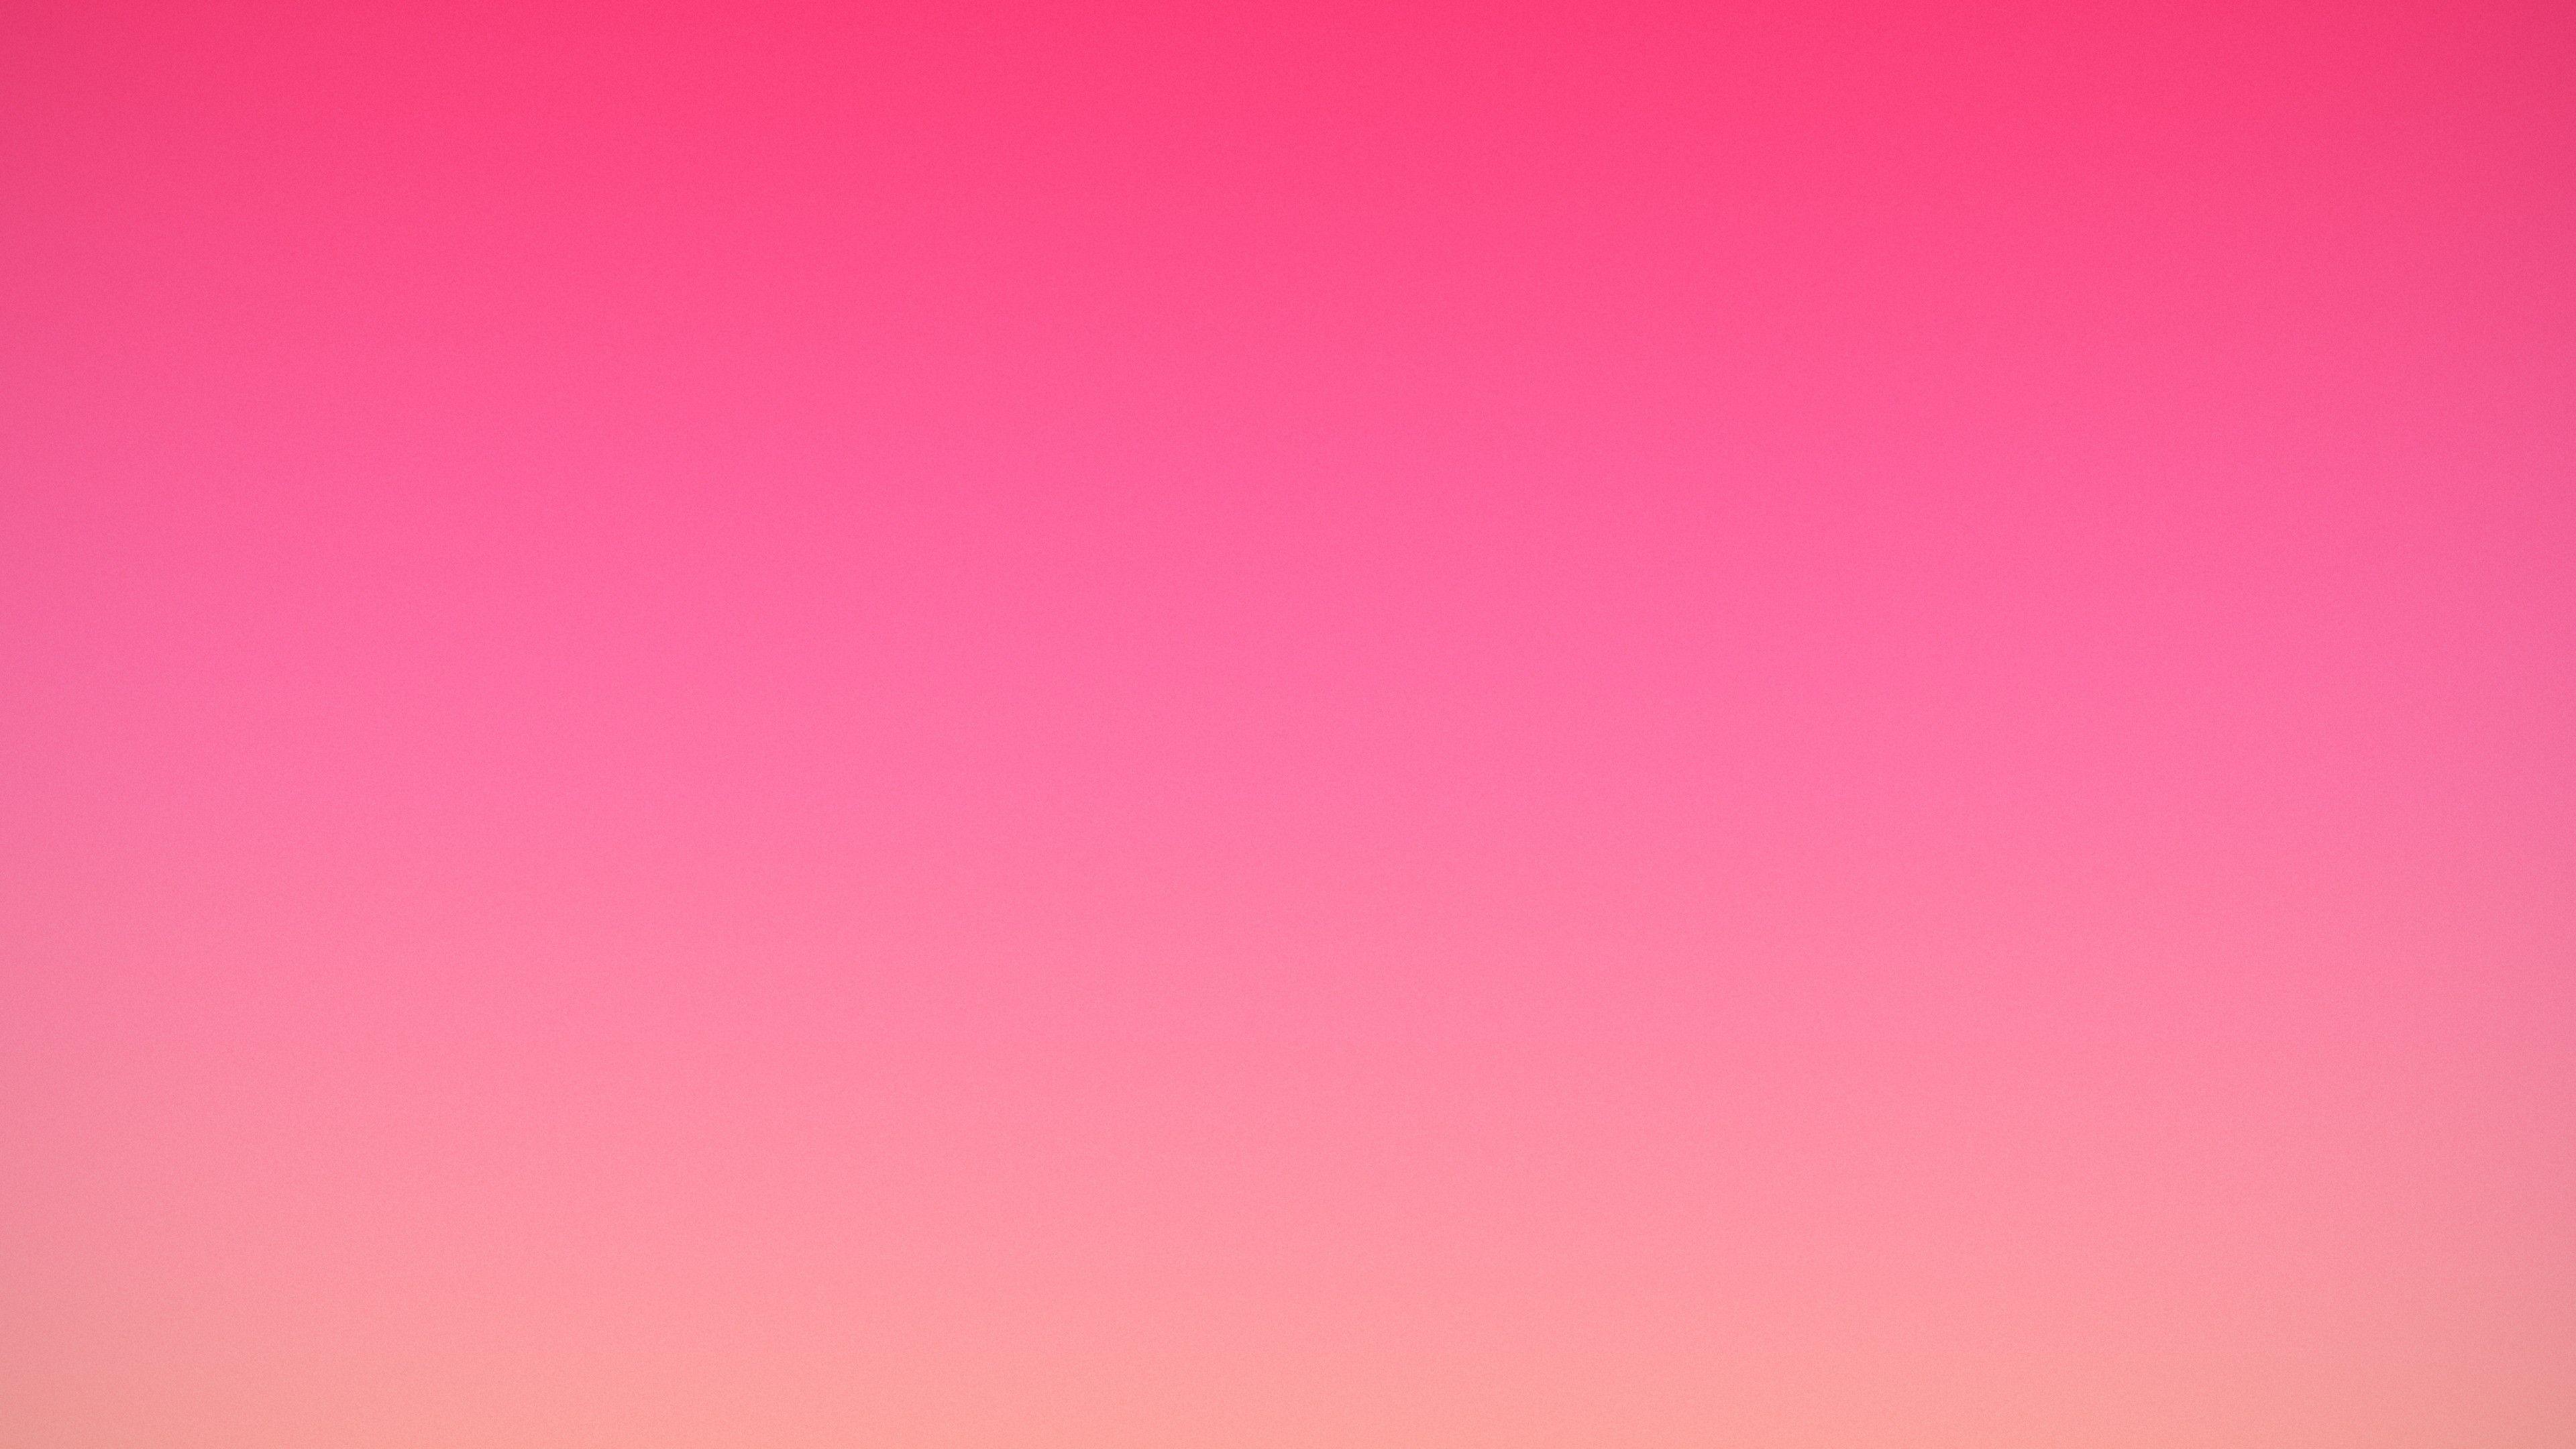 Simple Pink Wallpapers - Top Những Hình Ảnh Đẹp